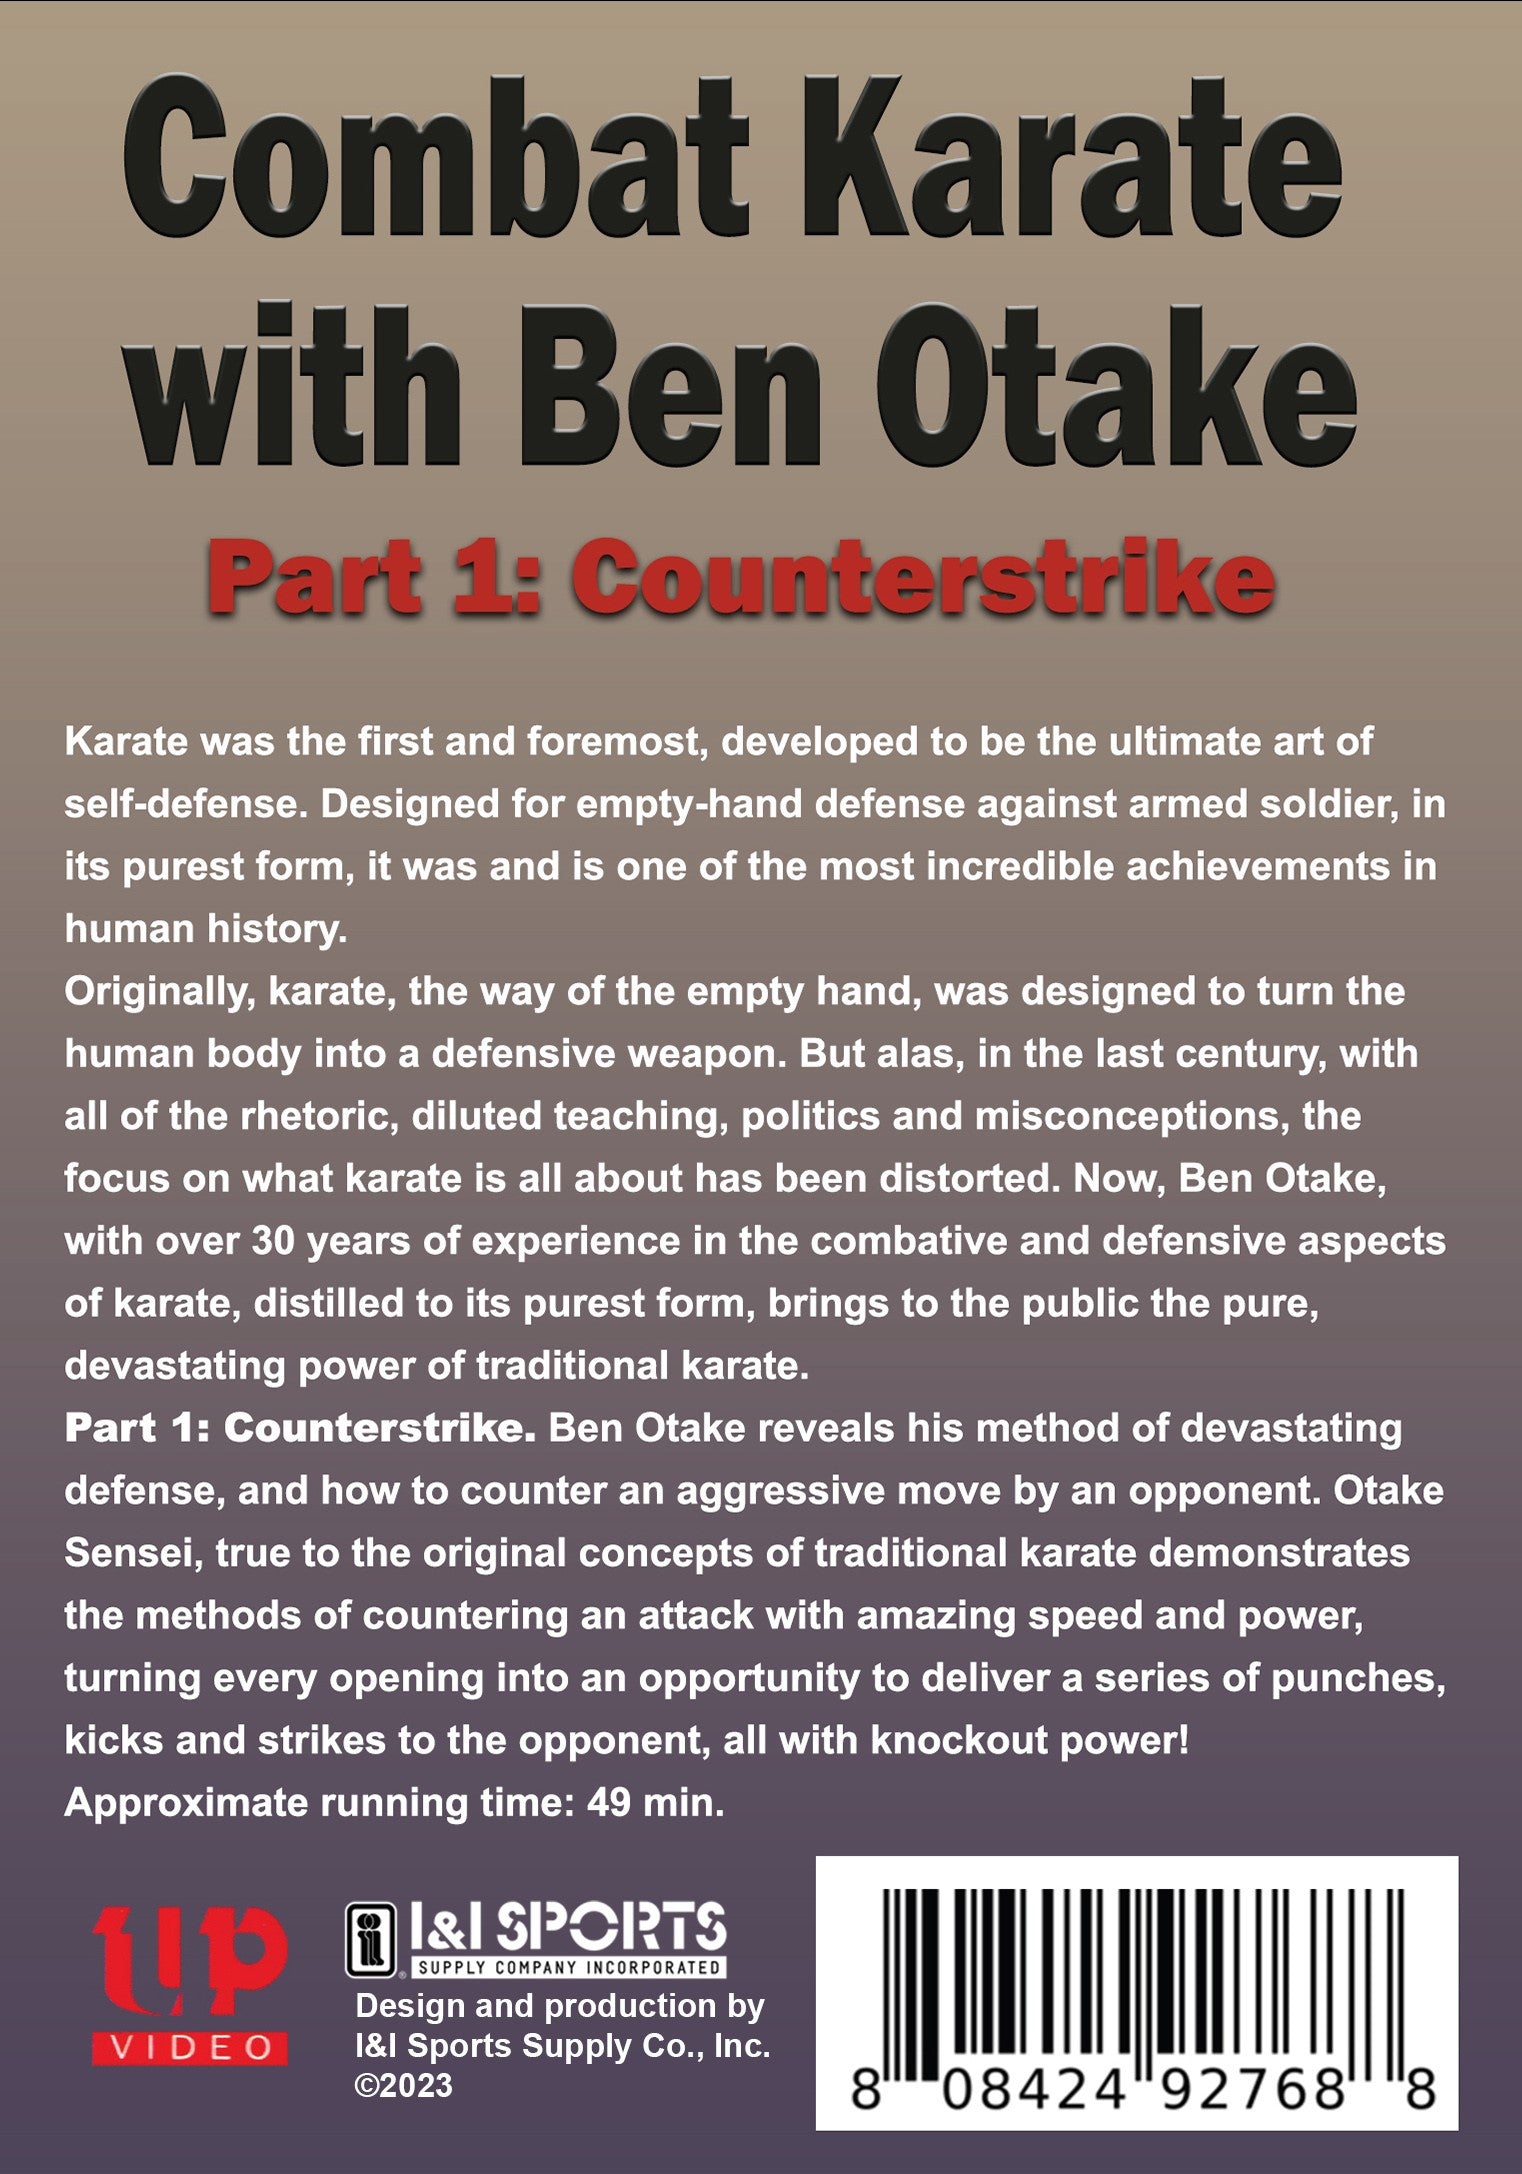 Combat Karate #1 Counterstrikes DVD Ben Otake traditional martial arts